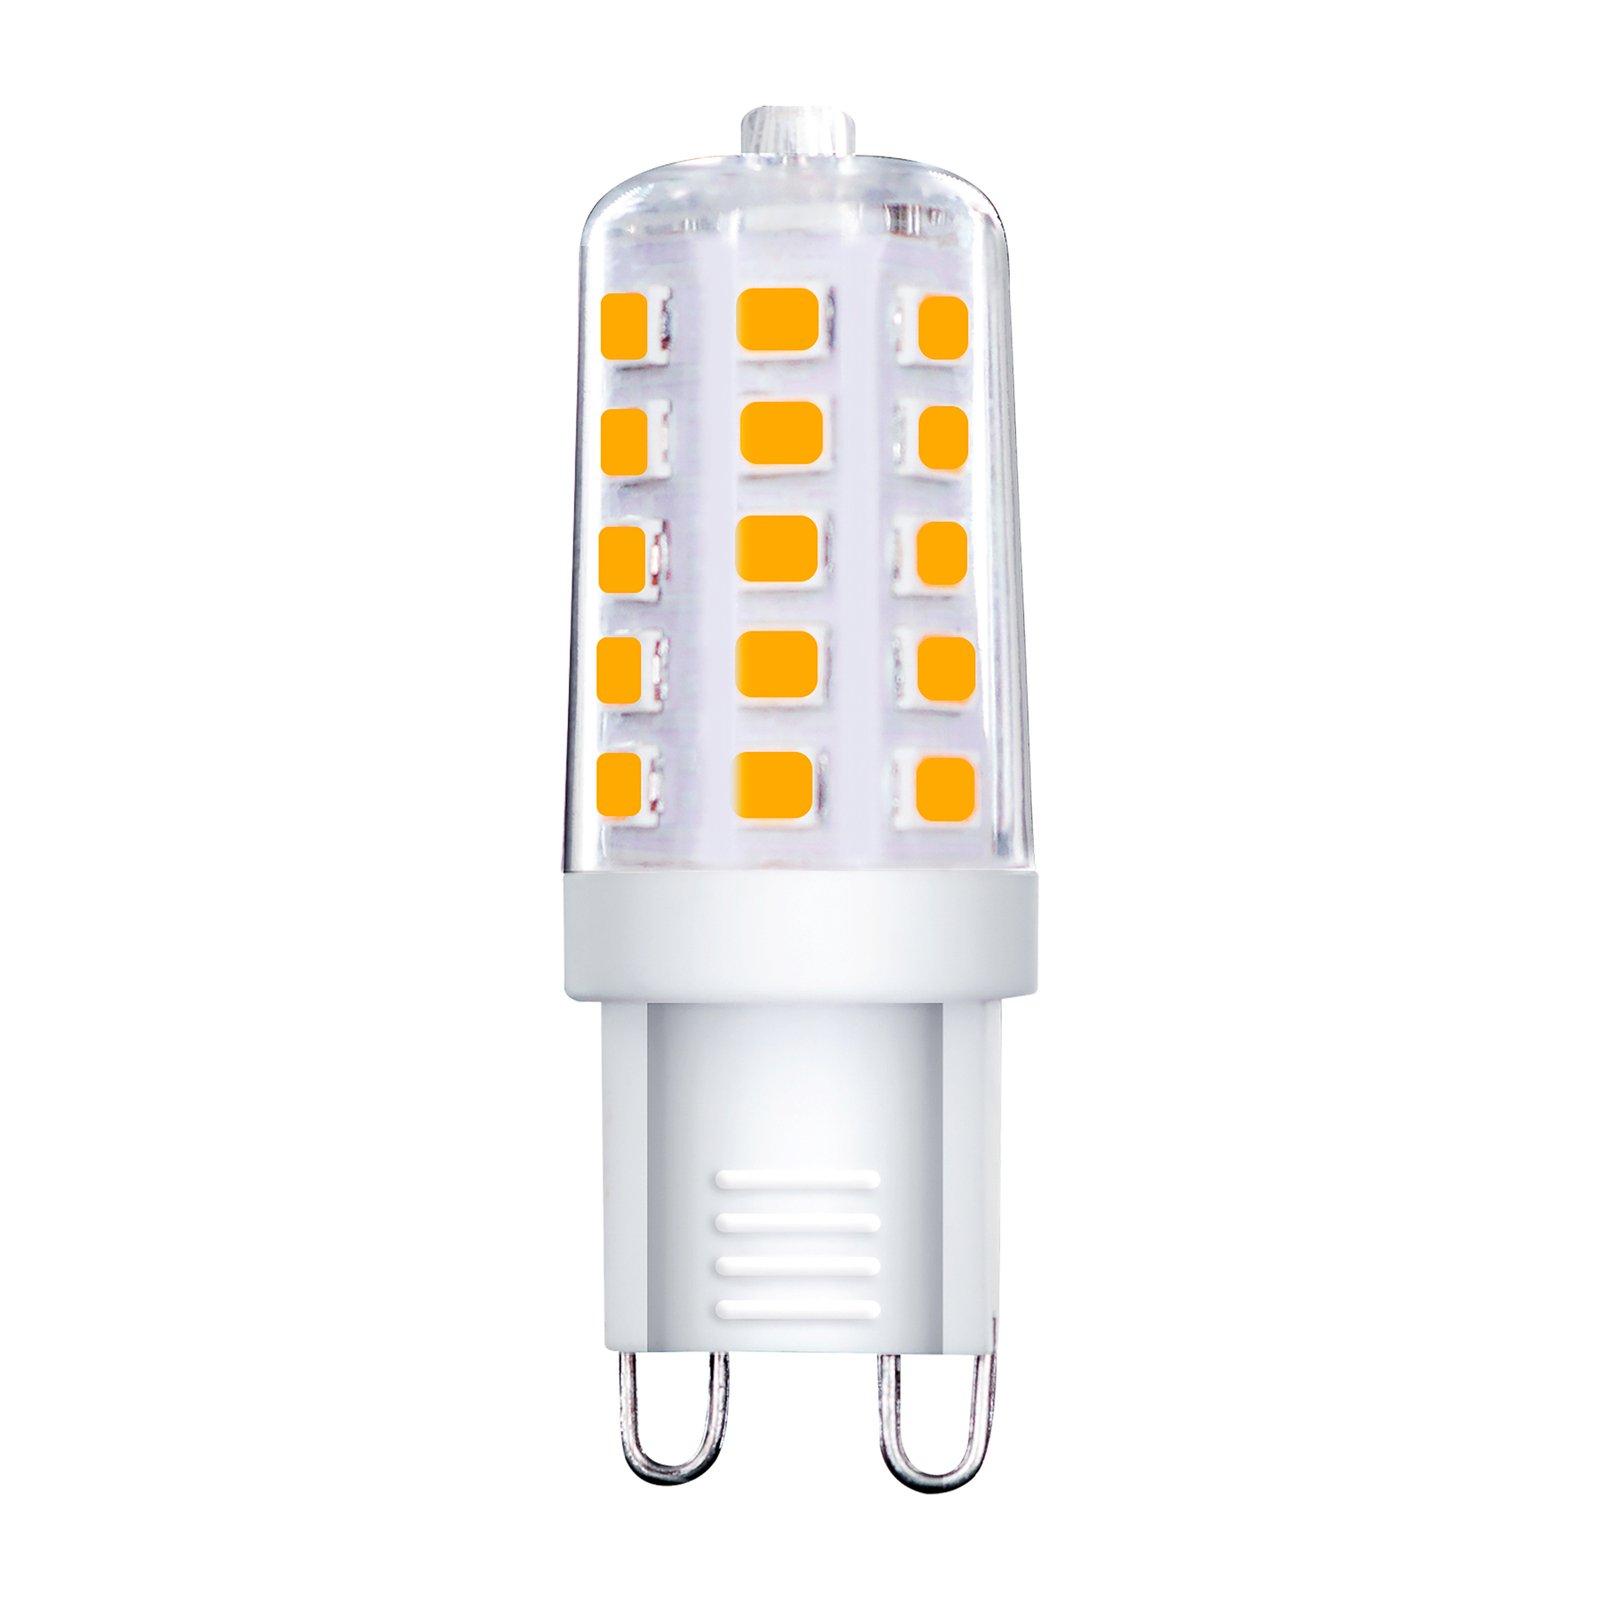 Müller Licht bi-pin LED bulb G9 3 W 4,000 K